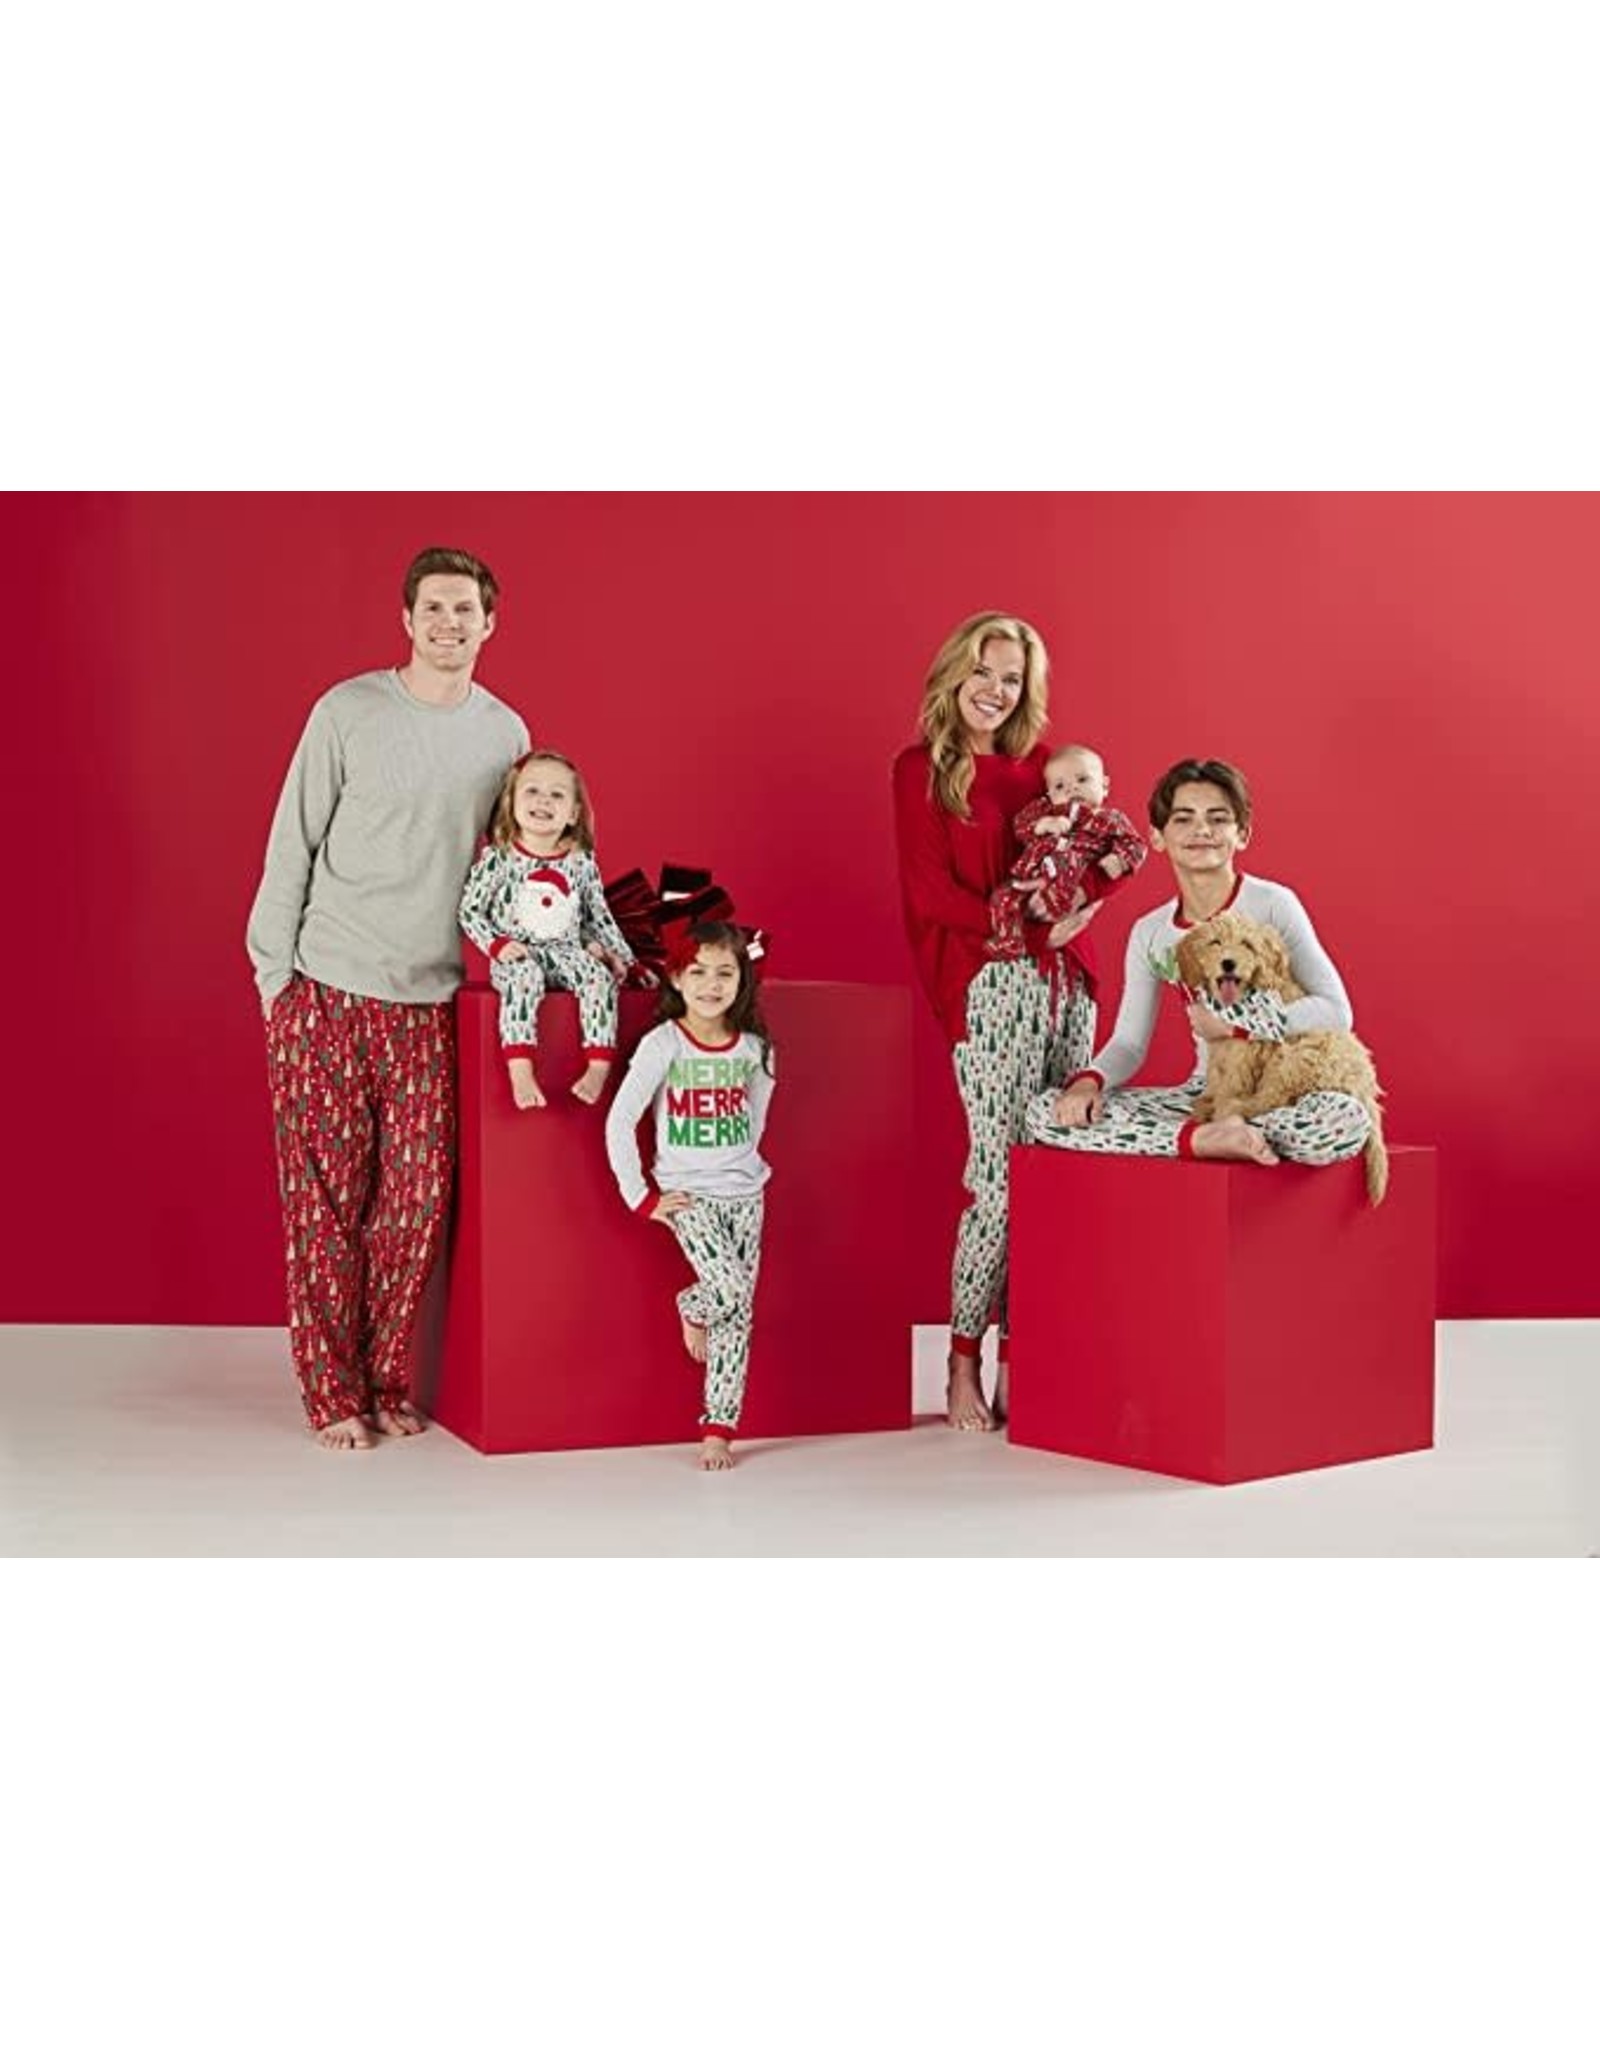 Mud Pie Christmas Sleepwear Family Pajamas 2pc Set Kids 3T